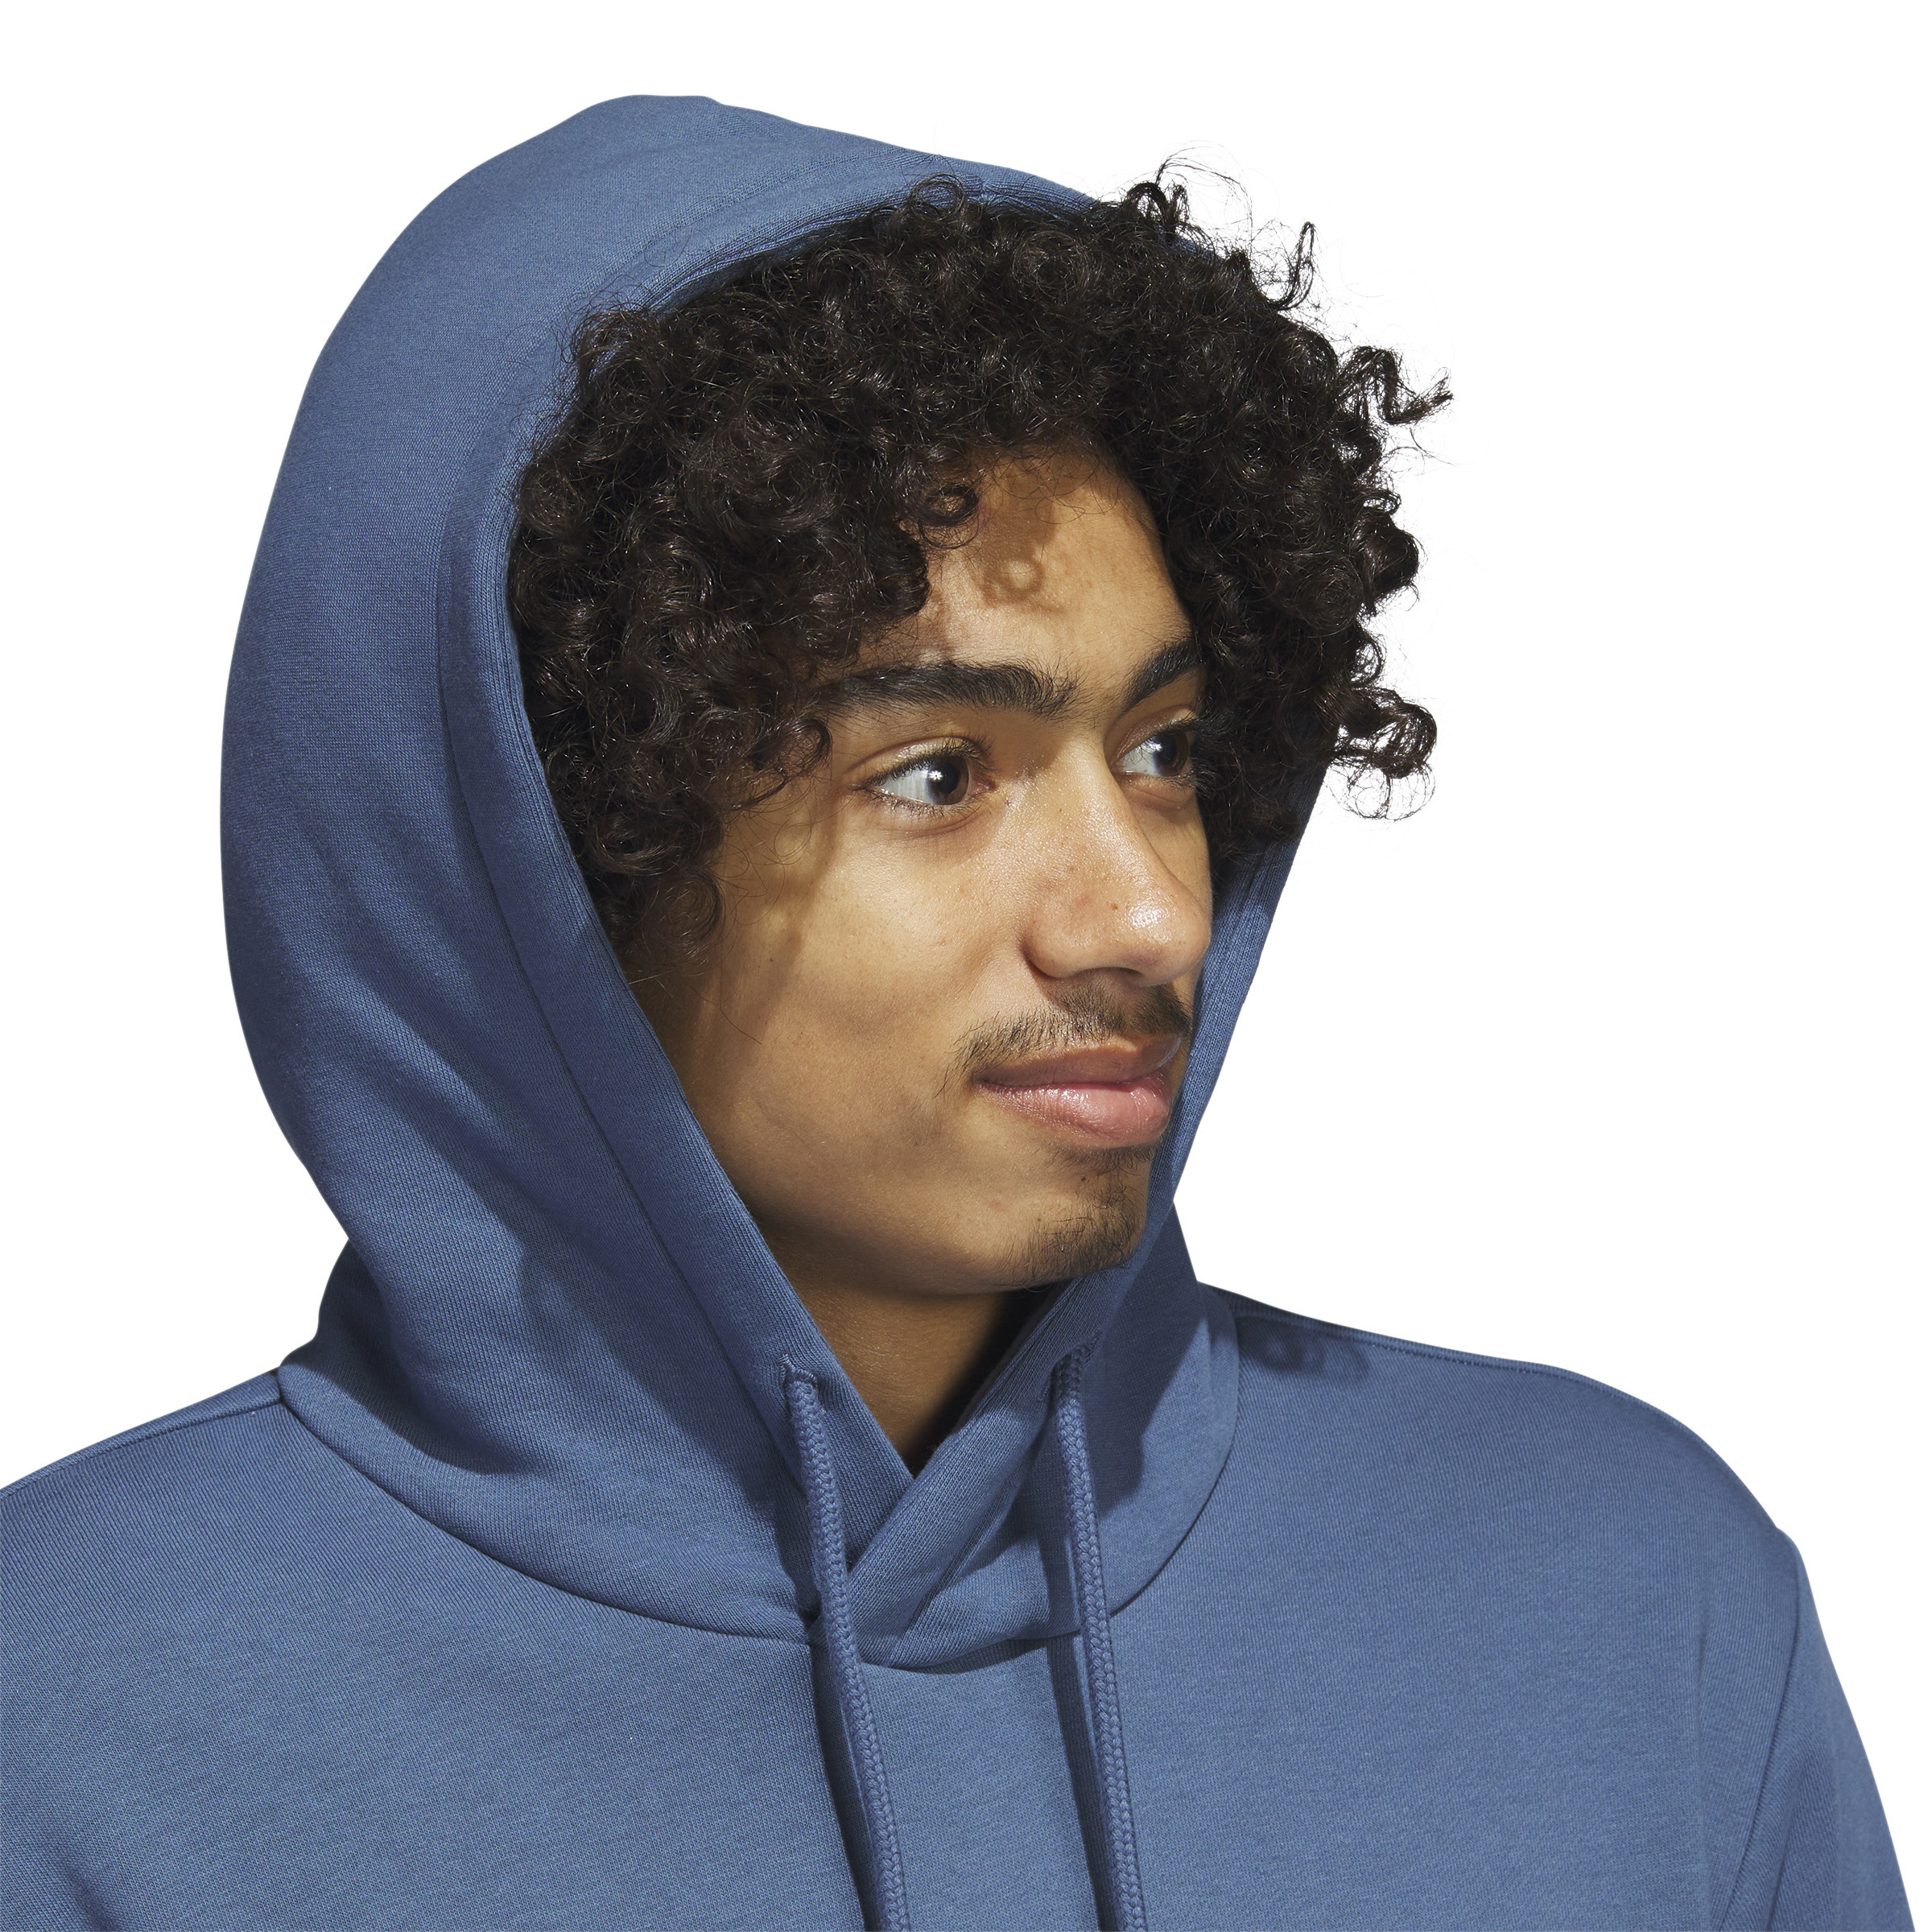 Adidas - Hooded sweatshirt with logo, Aviation Blue, large image number 3